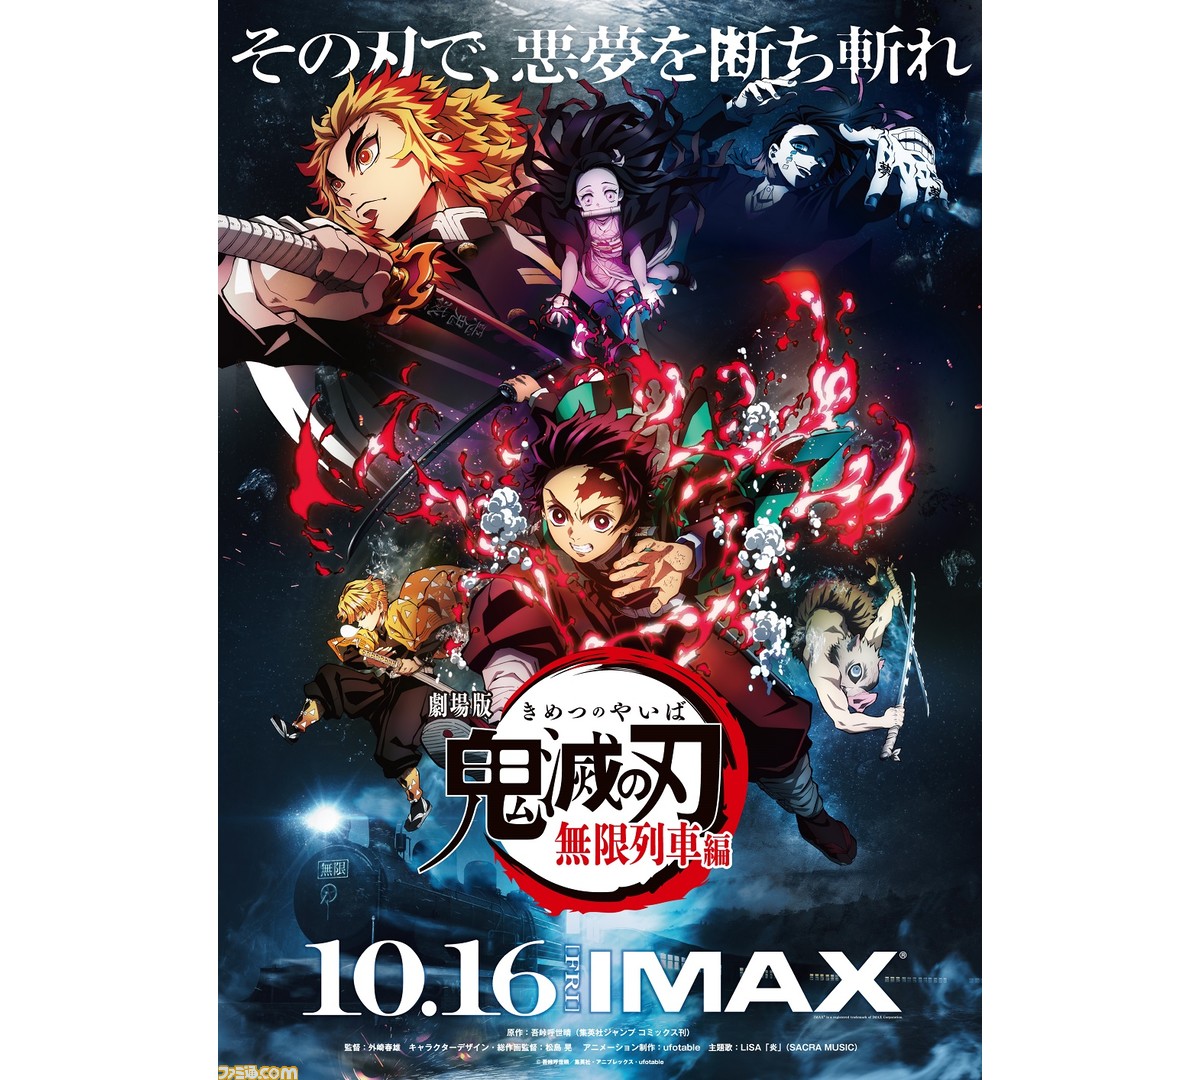 劇場版 鬼滅の刃 無限列車編がimaxで上映決定 Imaxが導入された全38館でも10月16日より公開 ファミ通 Com